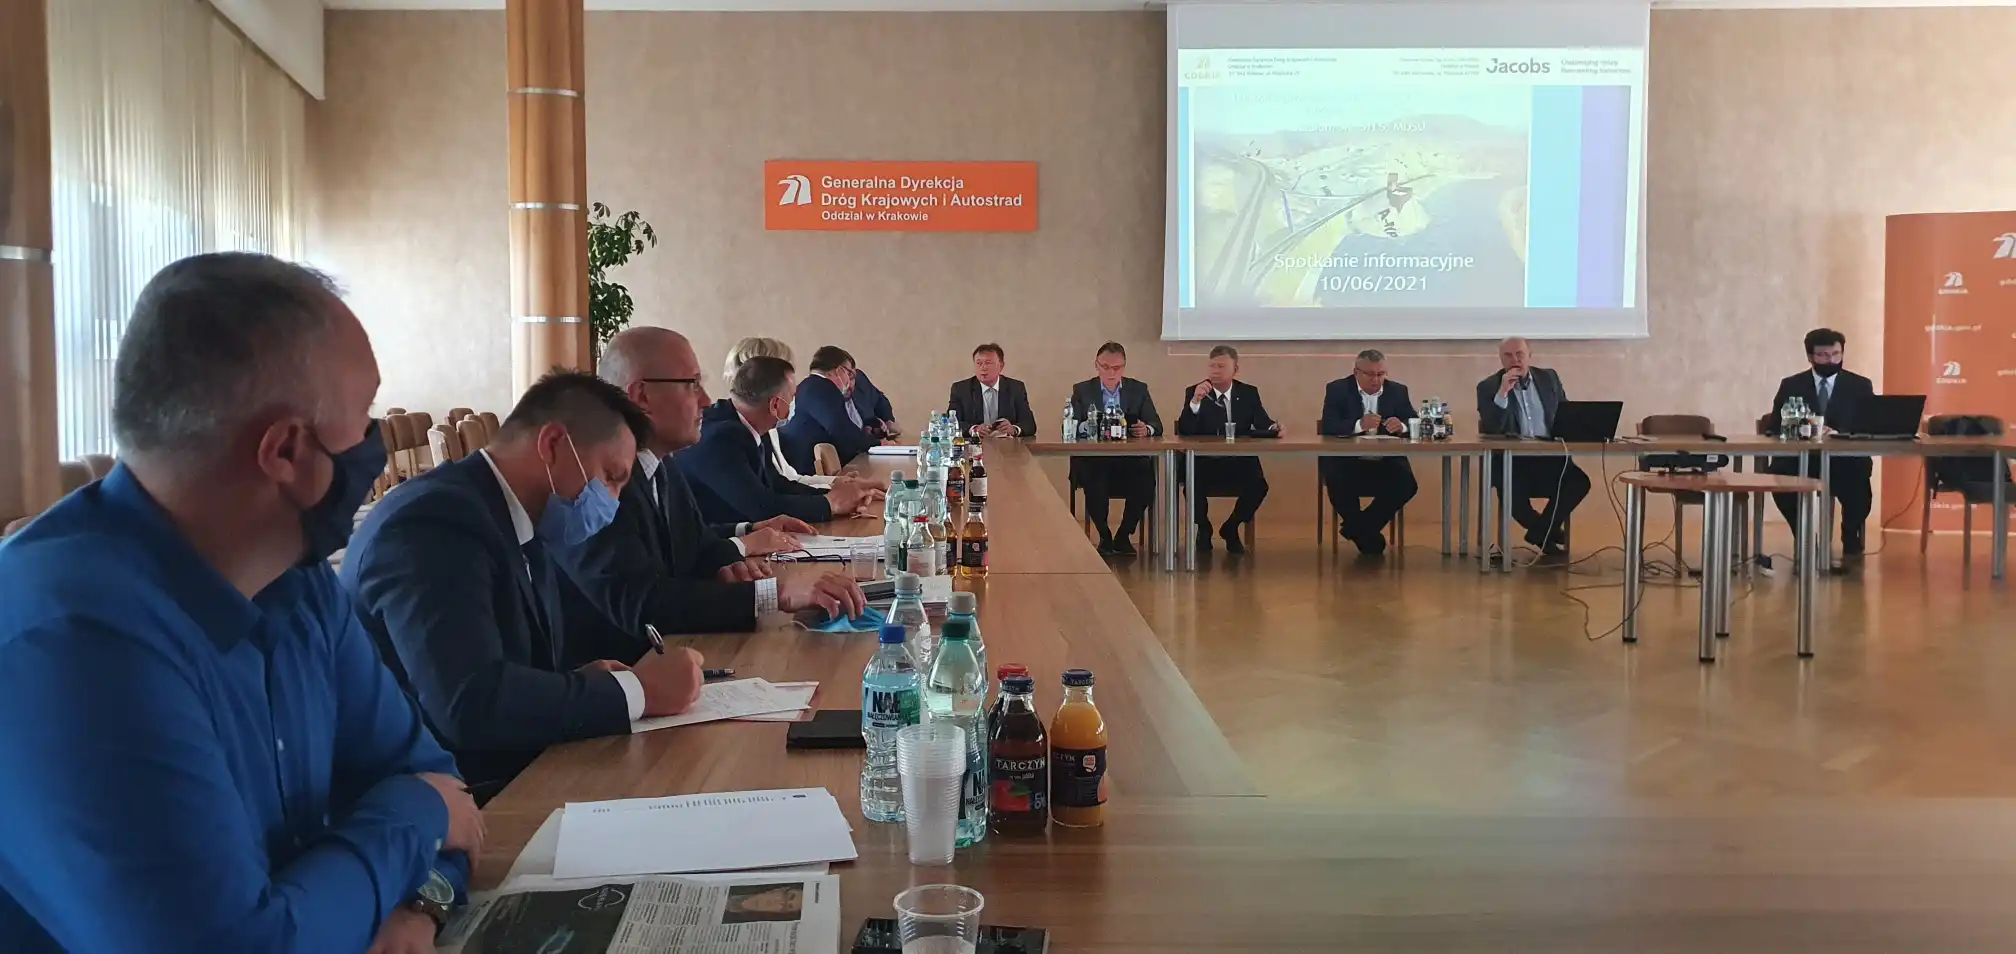 W Krakowie odbyło się spotkanie w sprawie budowy DK75 Brzesko Nowy Sącz